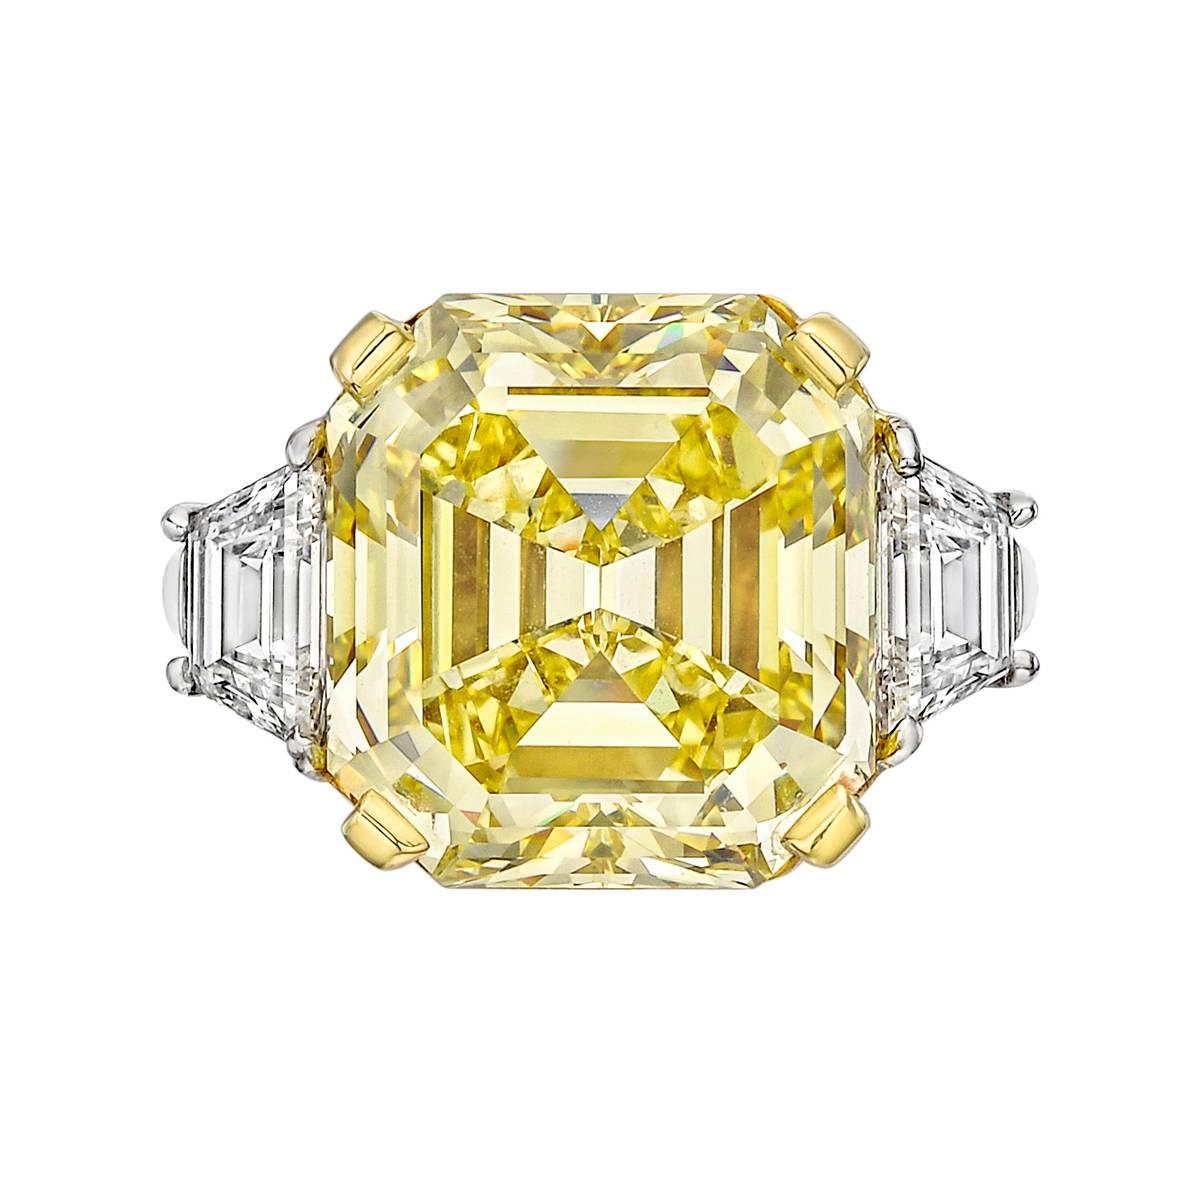 10.03 Carat Fancy Intense Yellow Asscher-Cut Diamond Ring